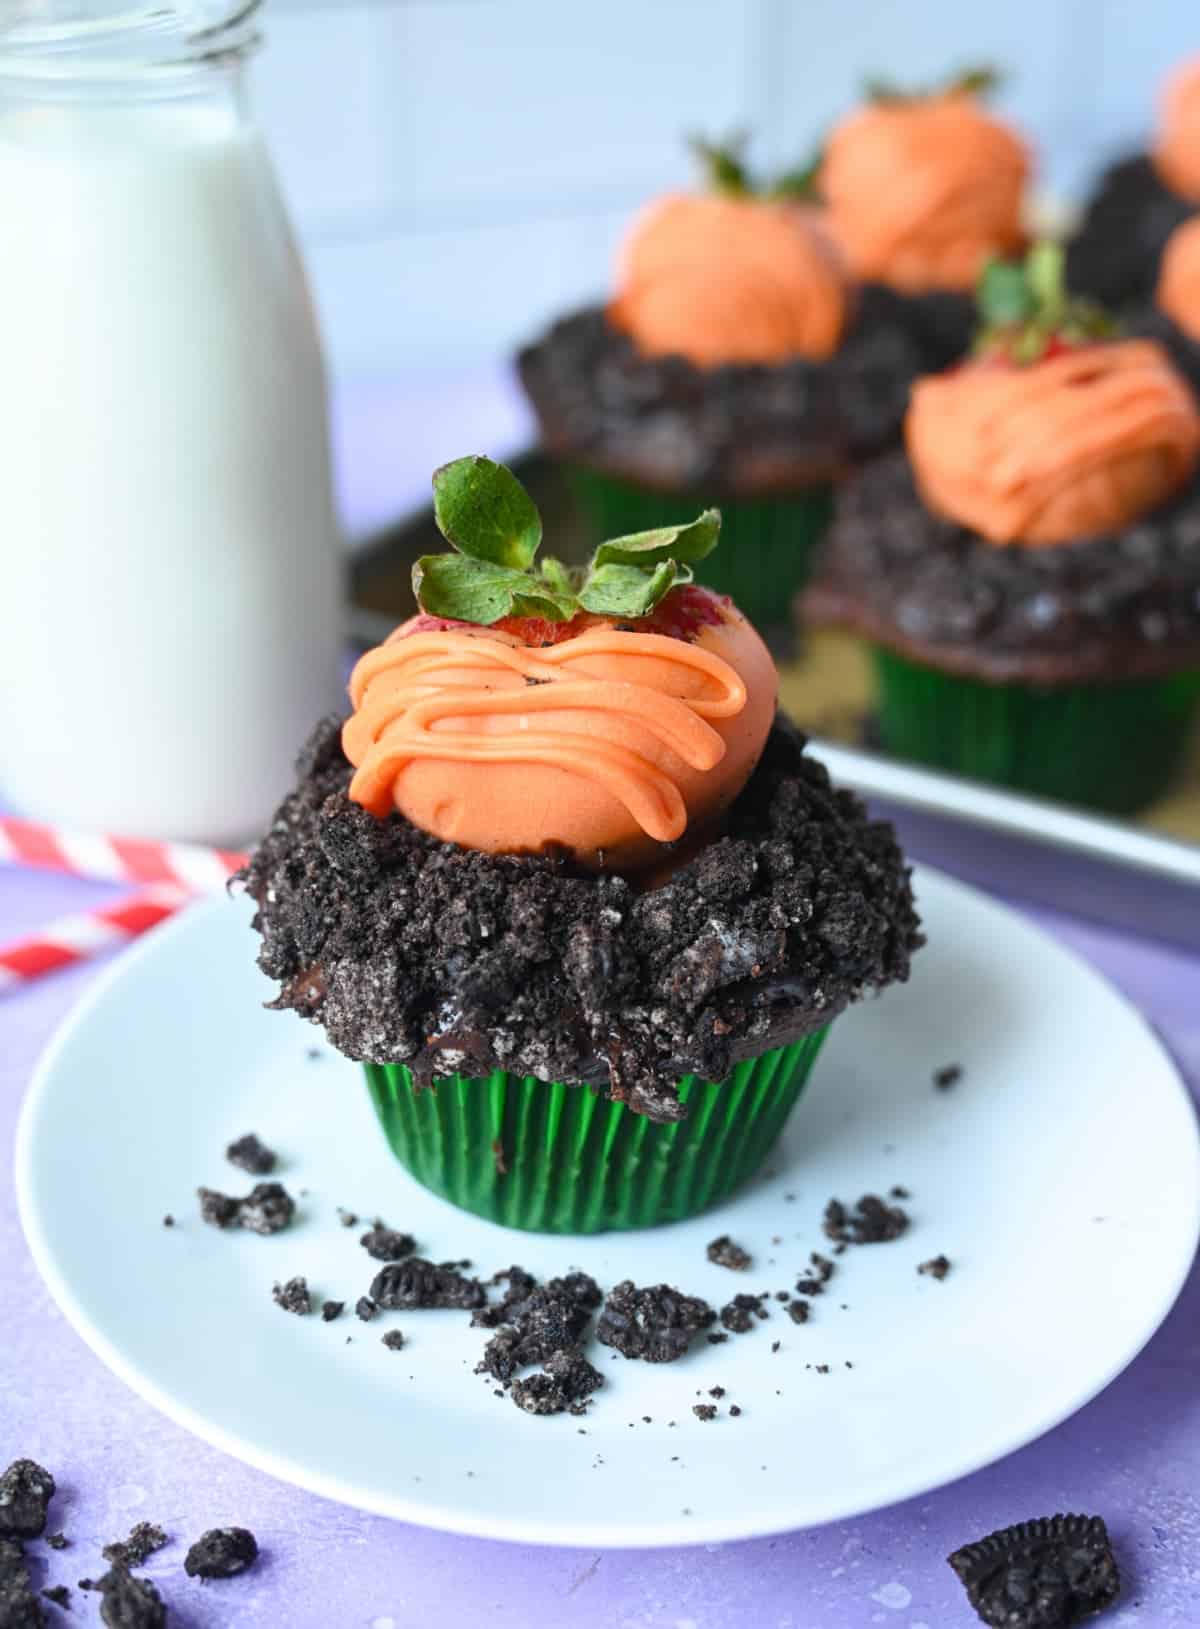 Un cupcake de chocolate con migas de oreo encima y una fresa cubierta de chocolate encima para que parezca una zanahoria.